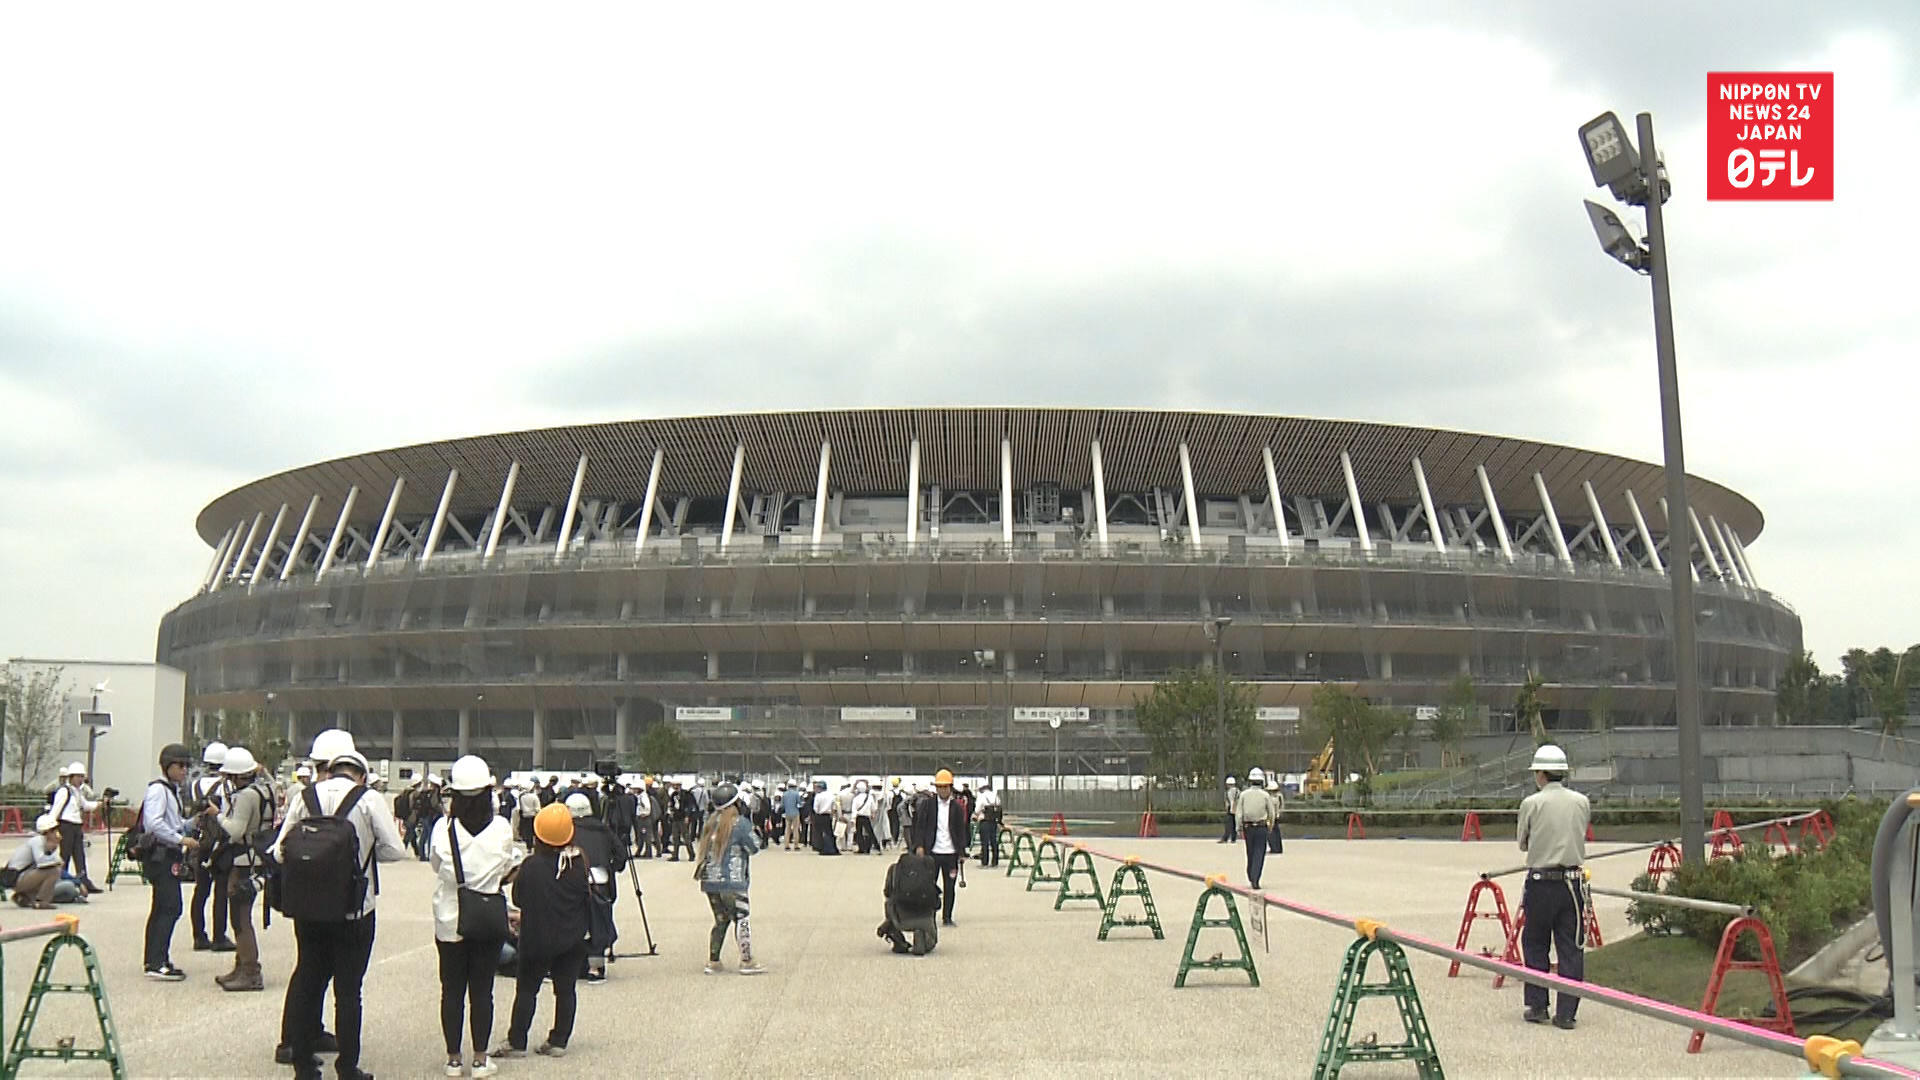 Tokyo Olympic main stadium 90% finished